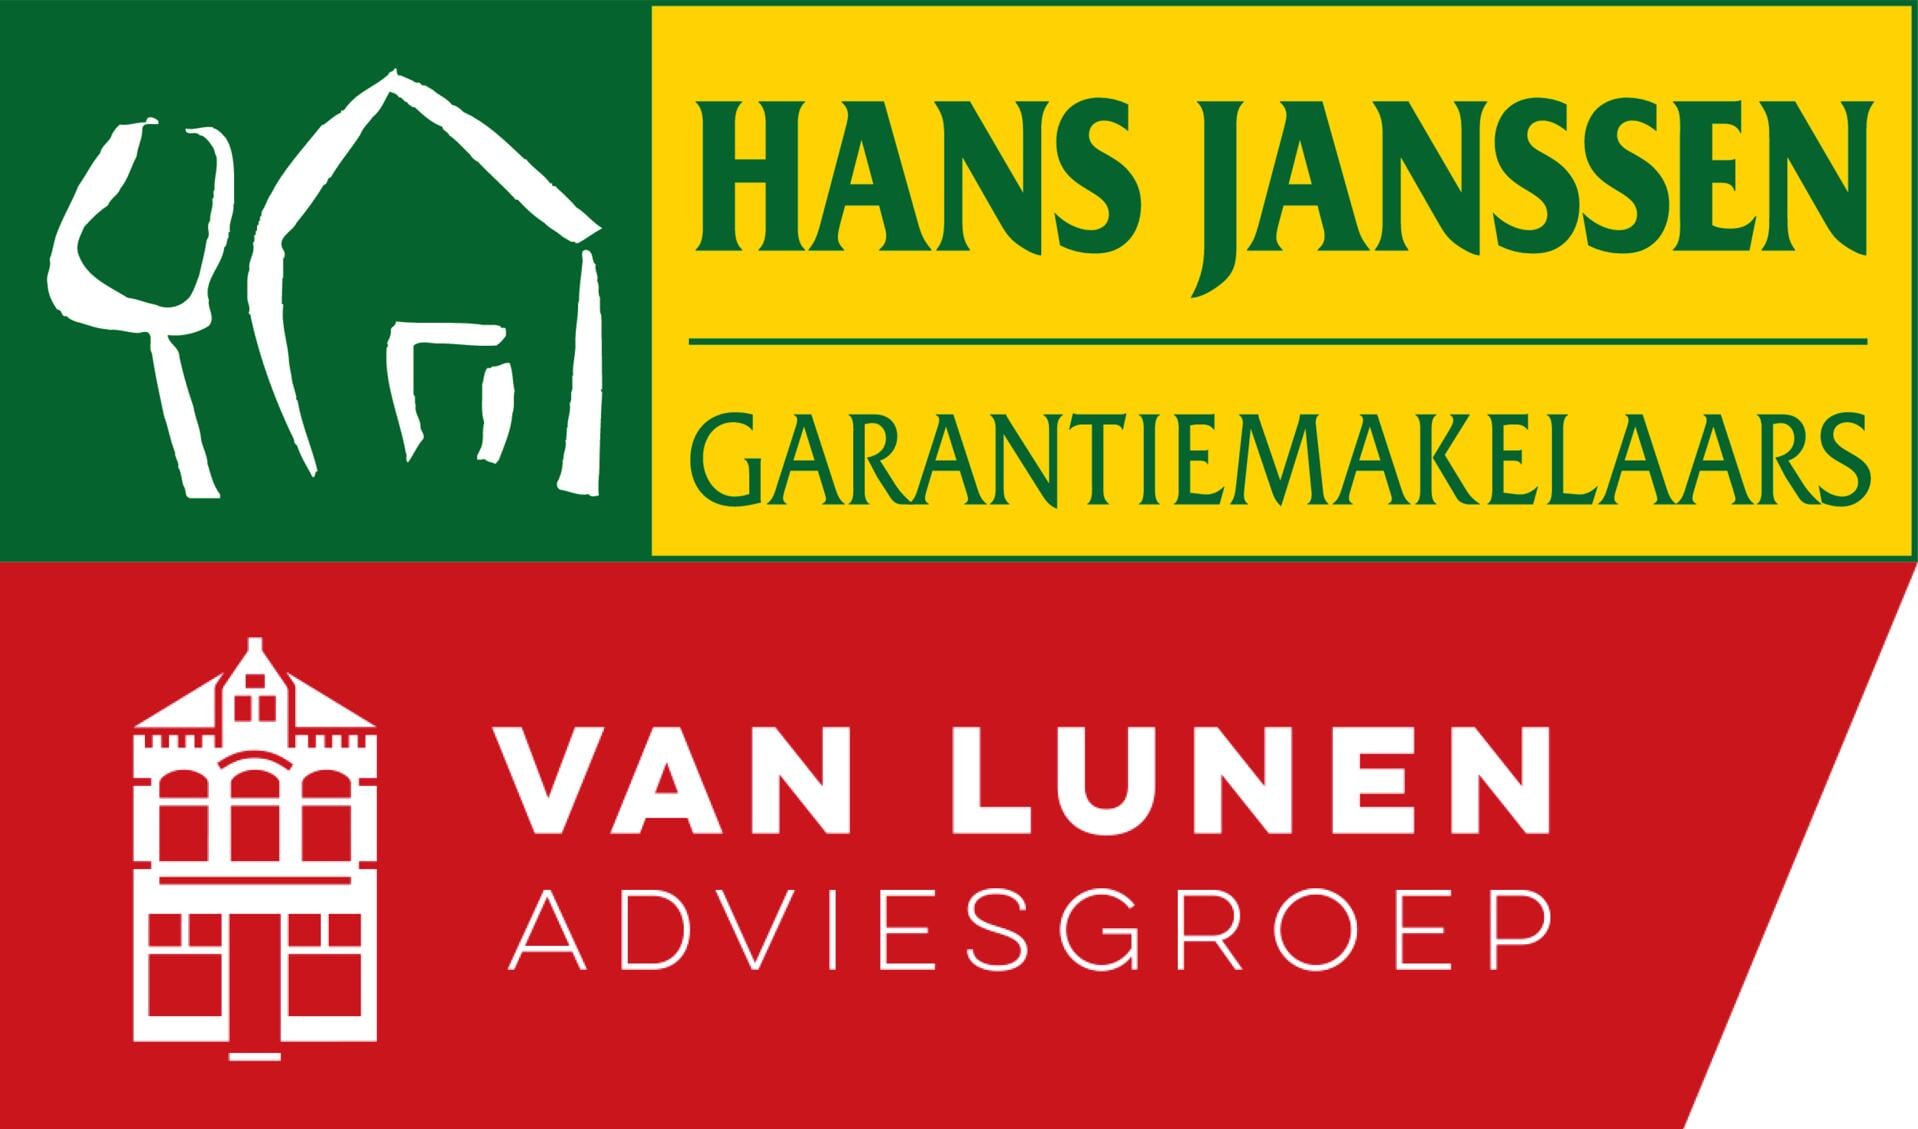 Hans Janssen Garantiemakelaars heeft per 1 november de werkzaamheden op het gebied van de woningmakelaardij overgenomen van Van Lunen Adviesgroep in Boxmeer.